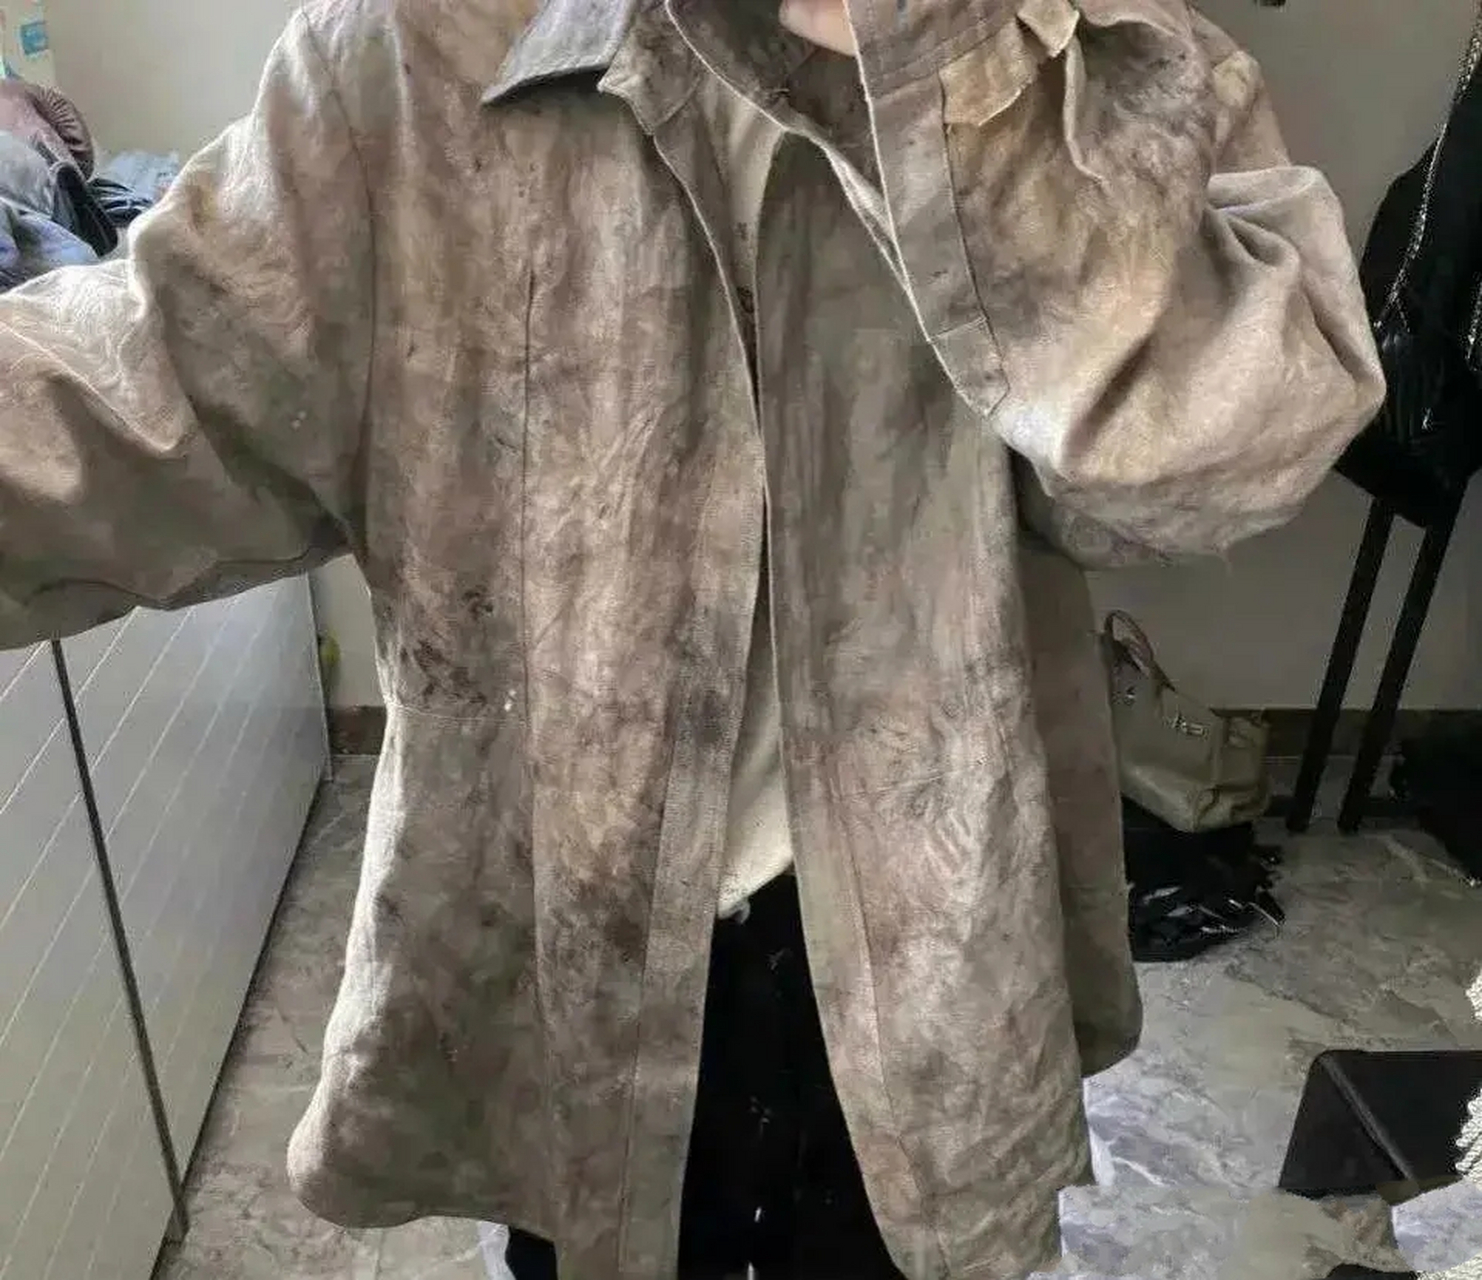 湖北武汉一位男子,在柜子里发现一件脏兮兮的衣服,他拿去洗甚至用毛刷